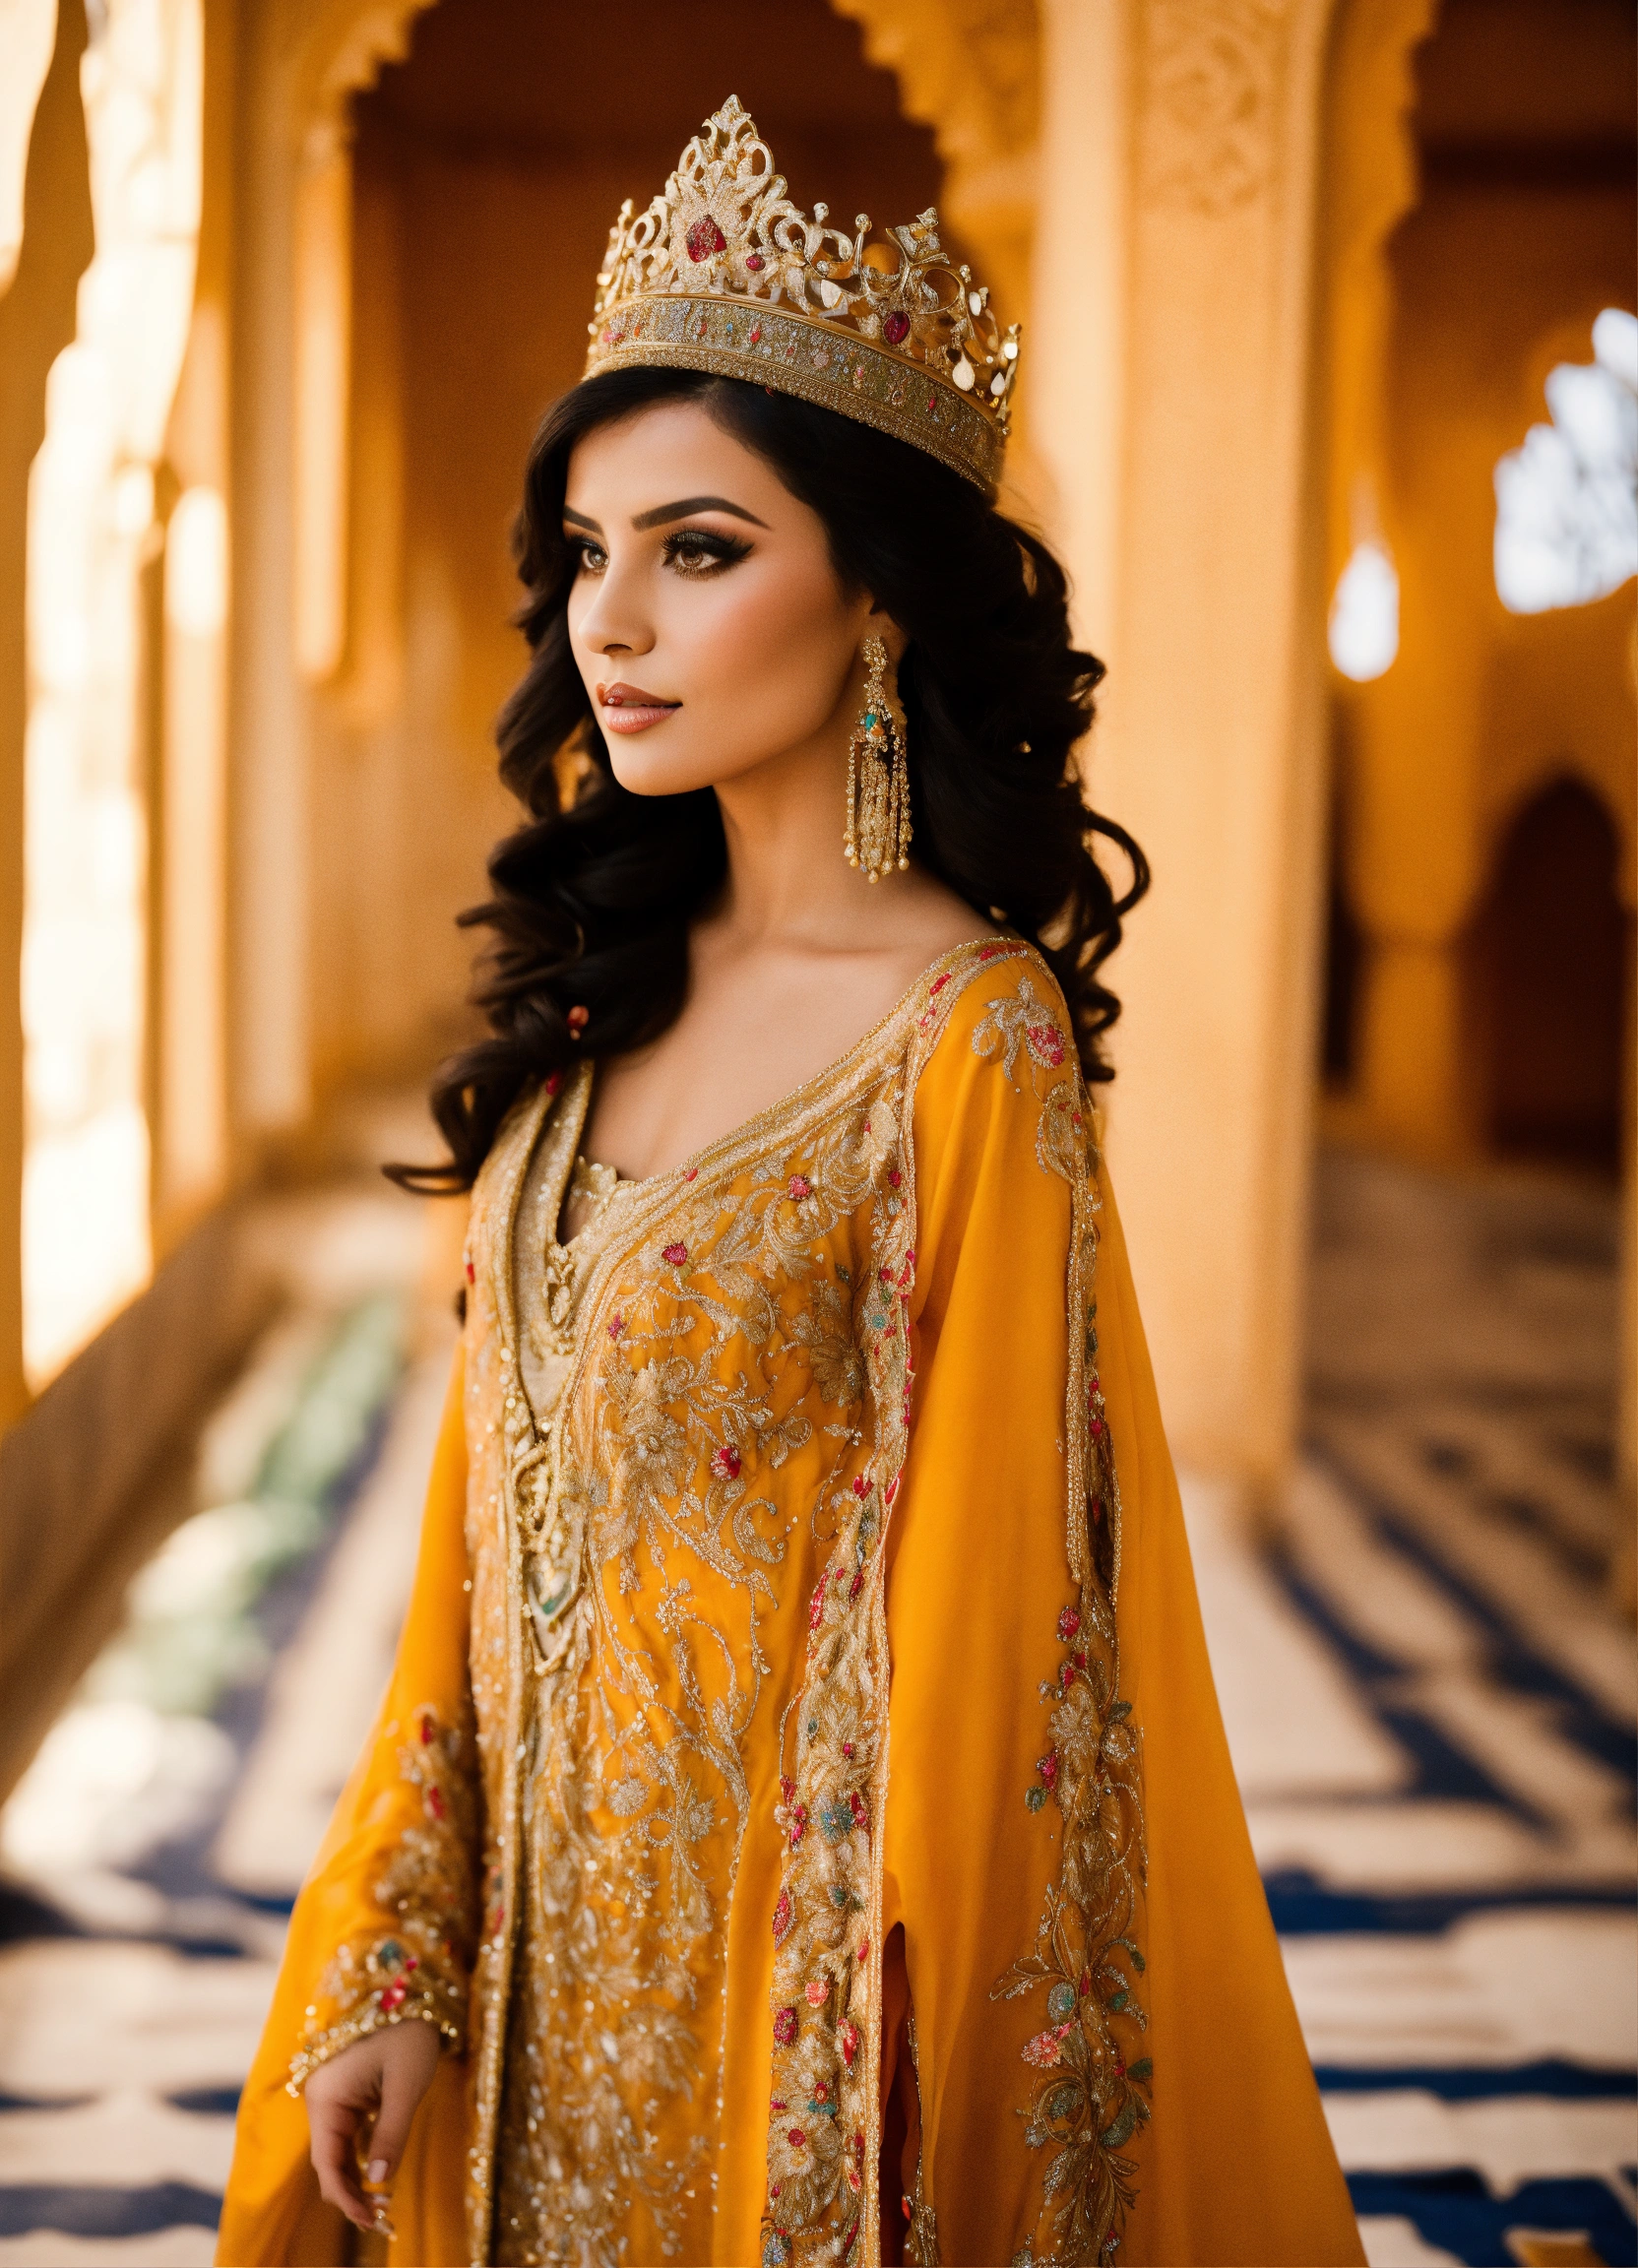 Mughal History: ये है मुग़ल की सबसे खूबसूरत और शक्तिशाली महिला जिसके इशारे पर चलता था पूरा साम्राज्य